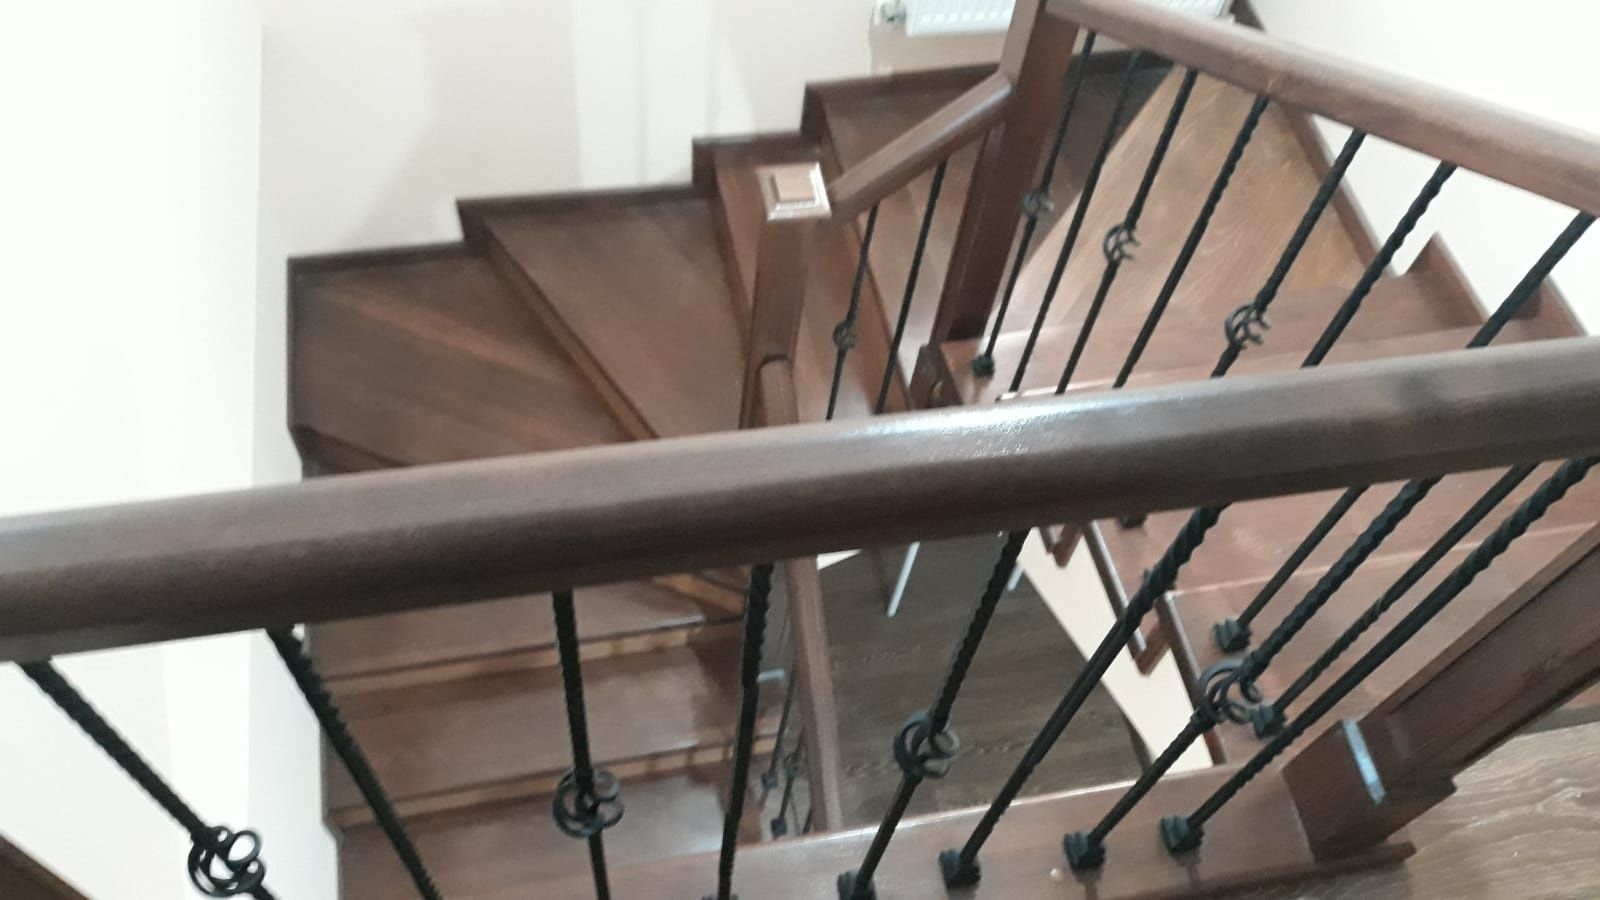 Execut scări interioare din lemn masiv cu st